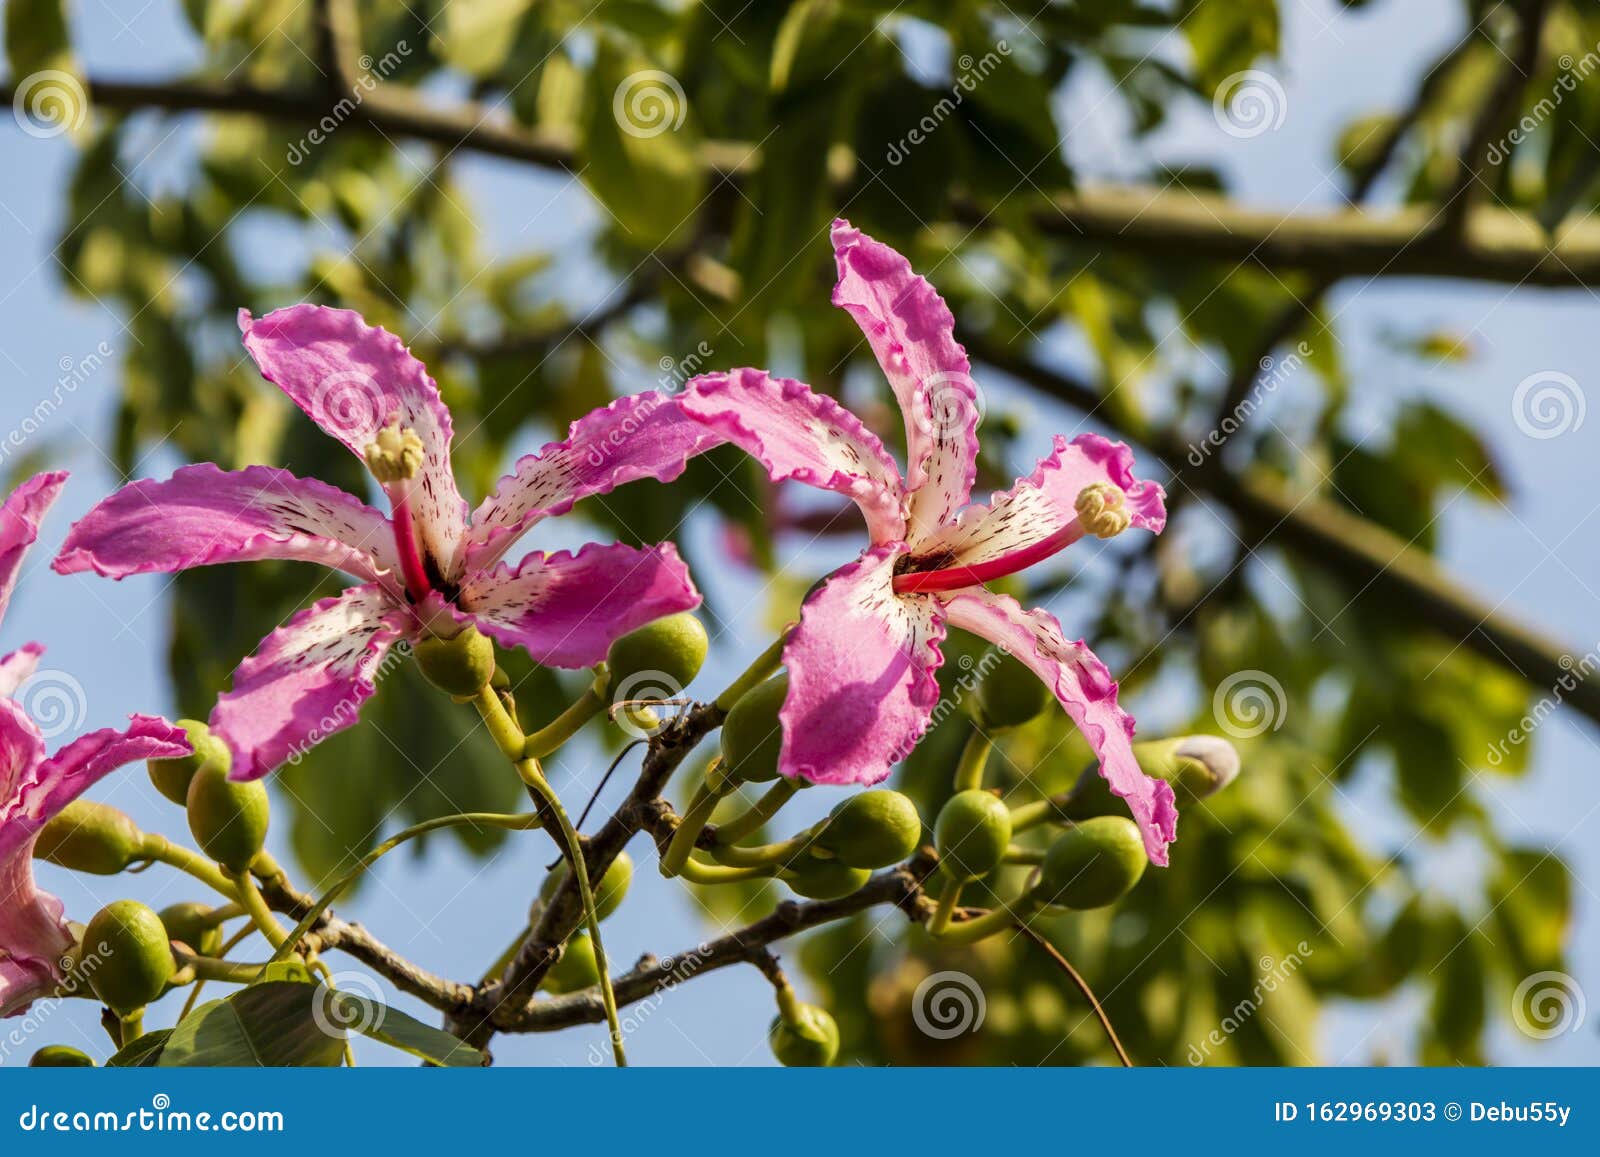 Flores De Orquídea Fina, Como Las Rosas, Del árbol De Flor De Seda Imagen  de archivo - Imagen de flores, belleza: 162969303